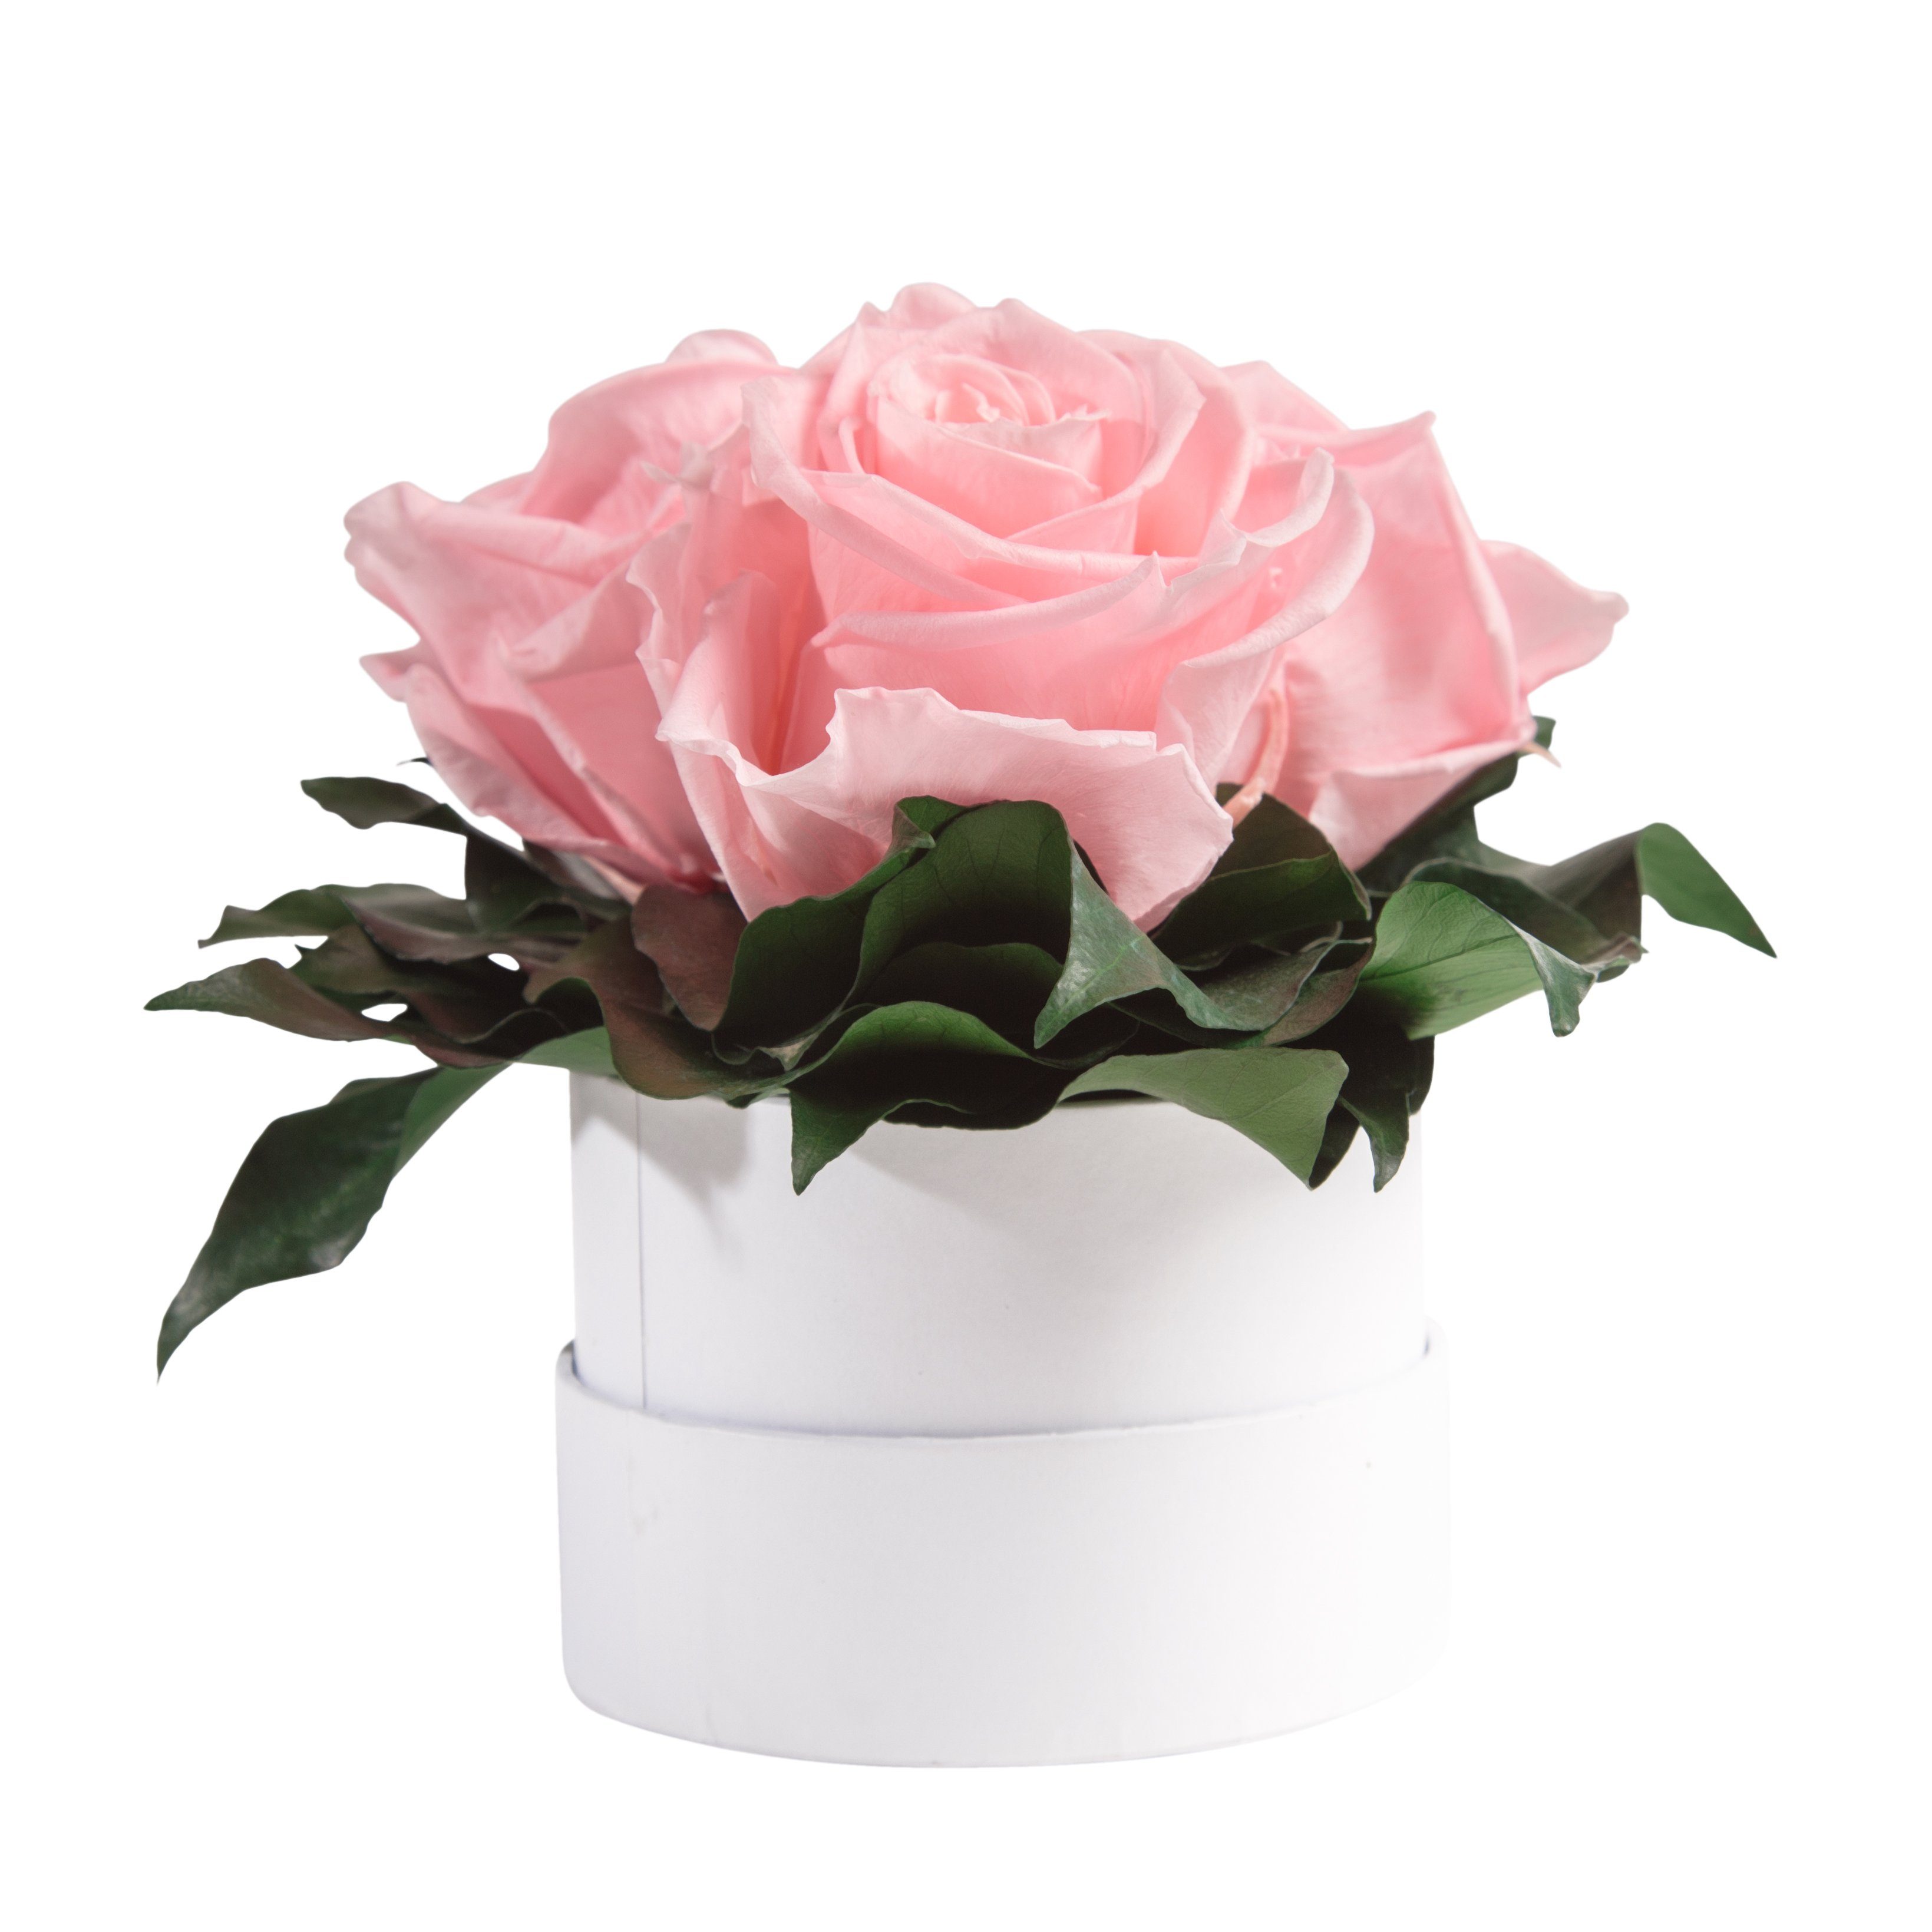 Rose, Kunstblume weiß Rosen 3 ROSEMARIE Geschenk Rosenbox Rosen Höhe 10 cm, für Infinity rund konserviert Heidelberg, SCHULZ echte Rosa Sie